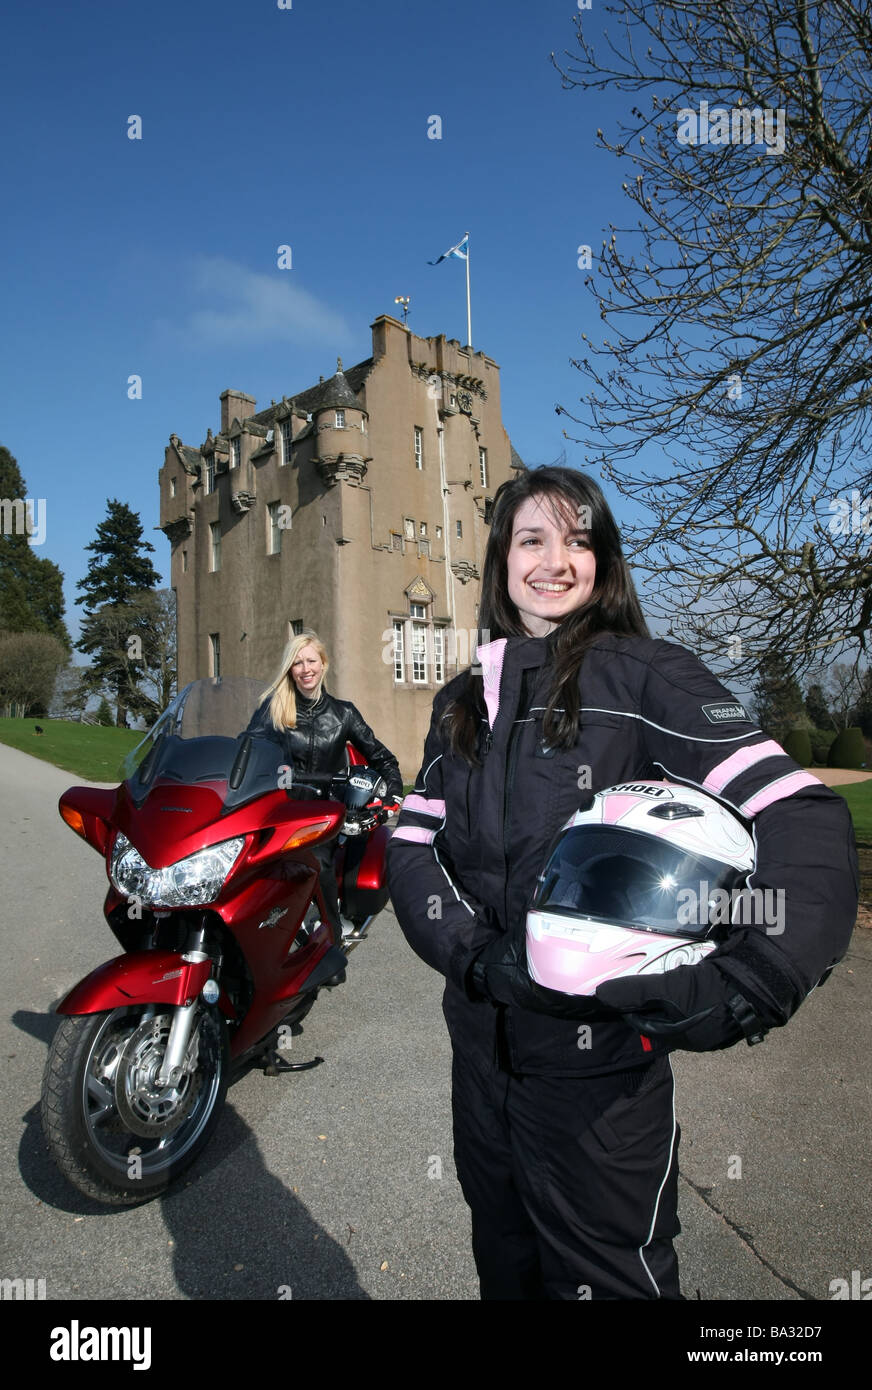 Deux femmes motocyclistes posant avec prêt de porter des vêtements protecteurs à l'emplacement de château écossais Banque D'Images